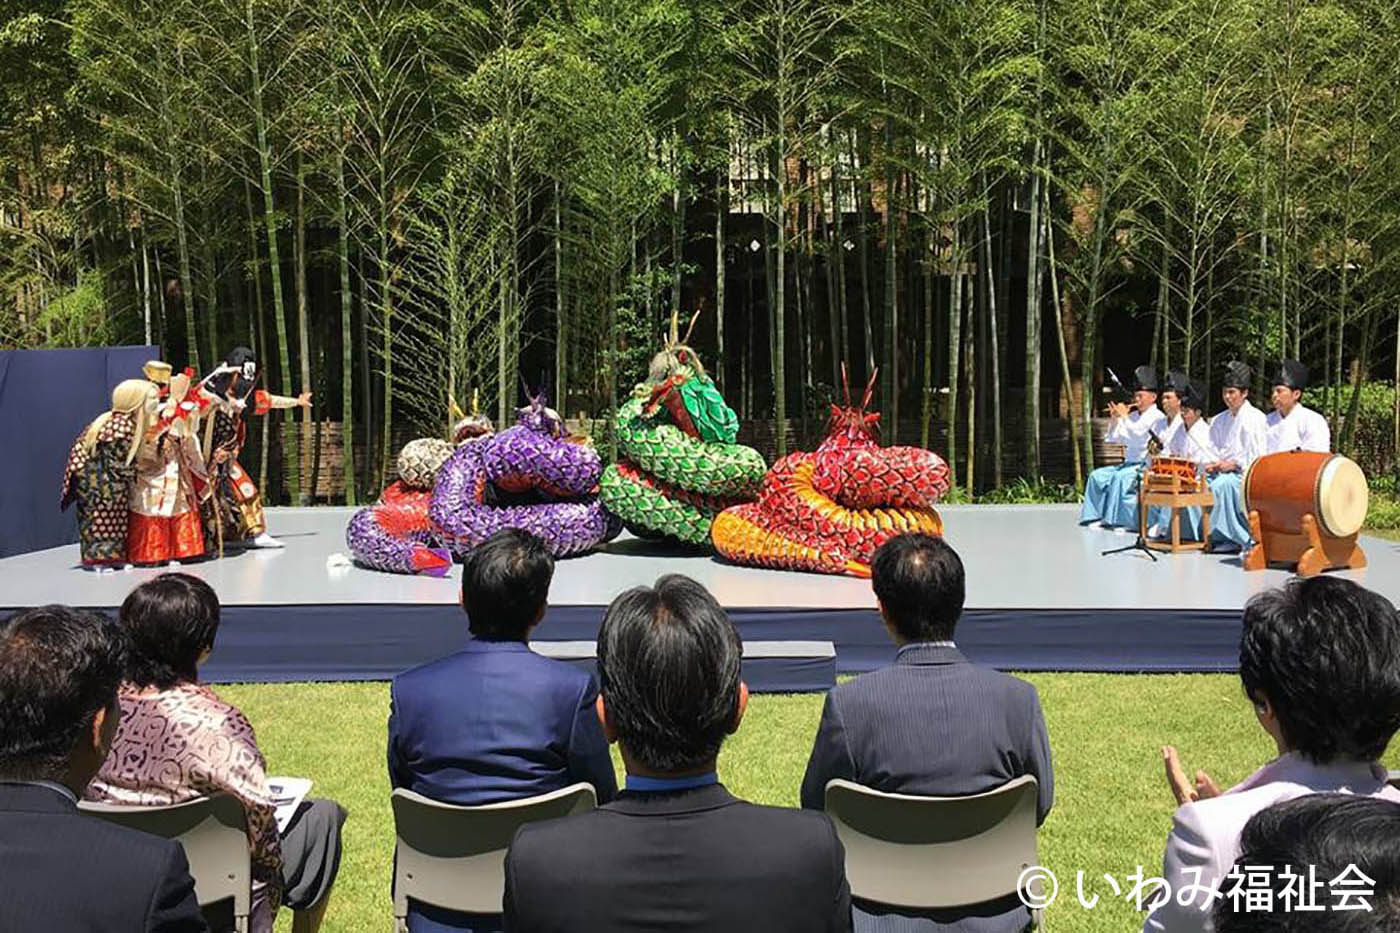 日本遺産の神楽産業 神楽ショップくわの木を訪問 | しまね観光